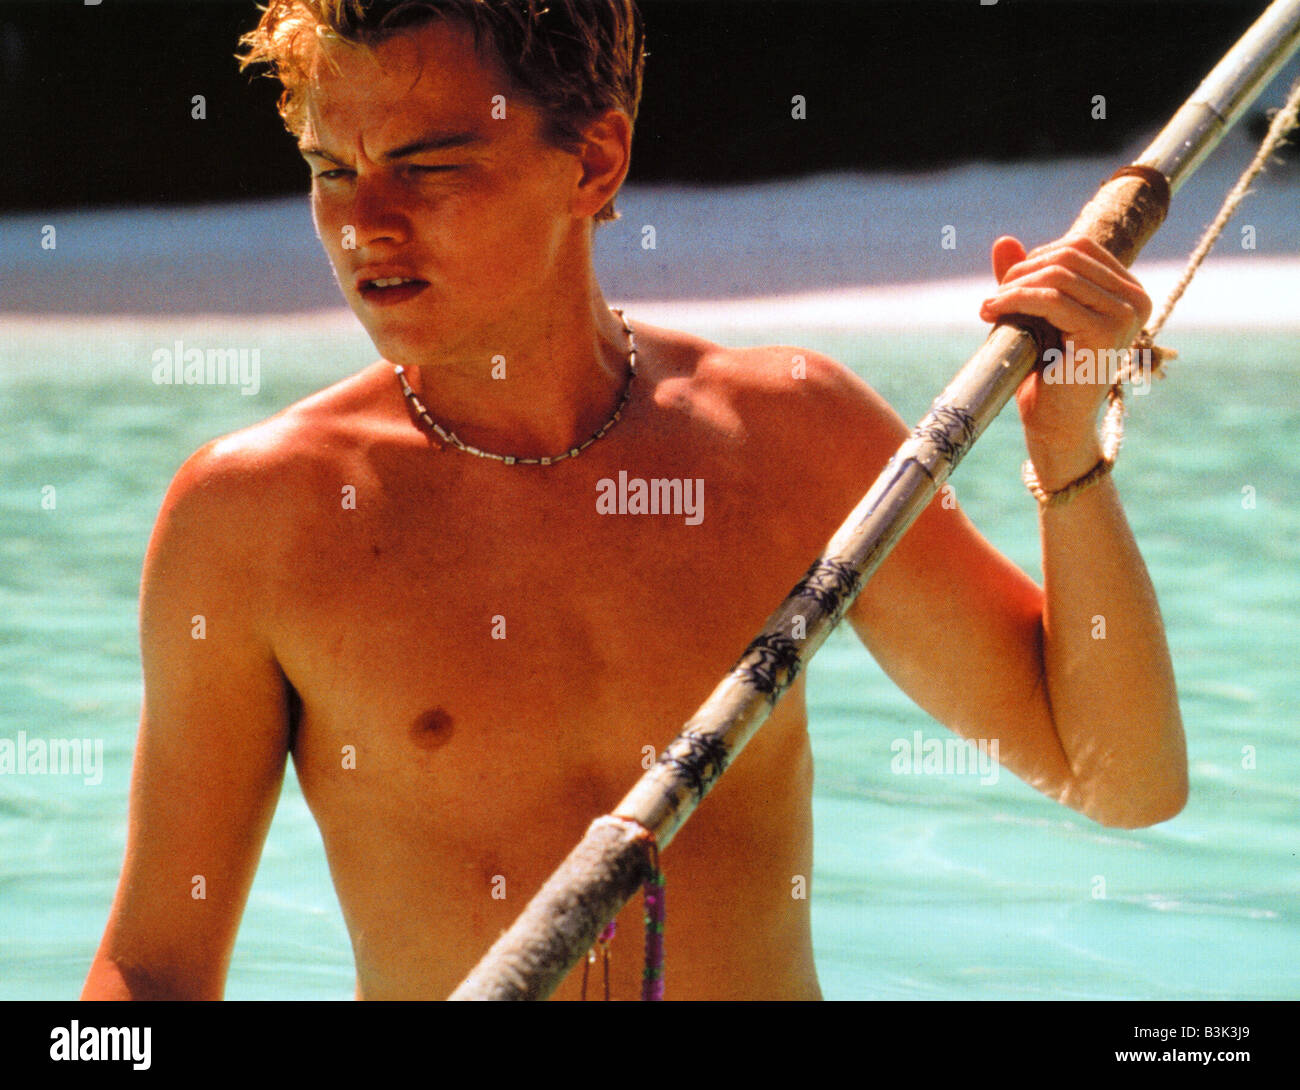 La spiaggia 2000 TCF film con Leonardo DiCaprio Foto Stock